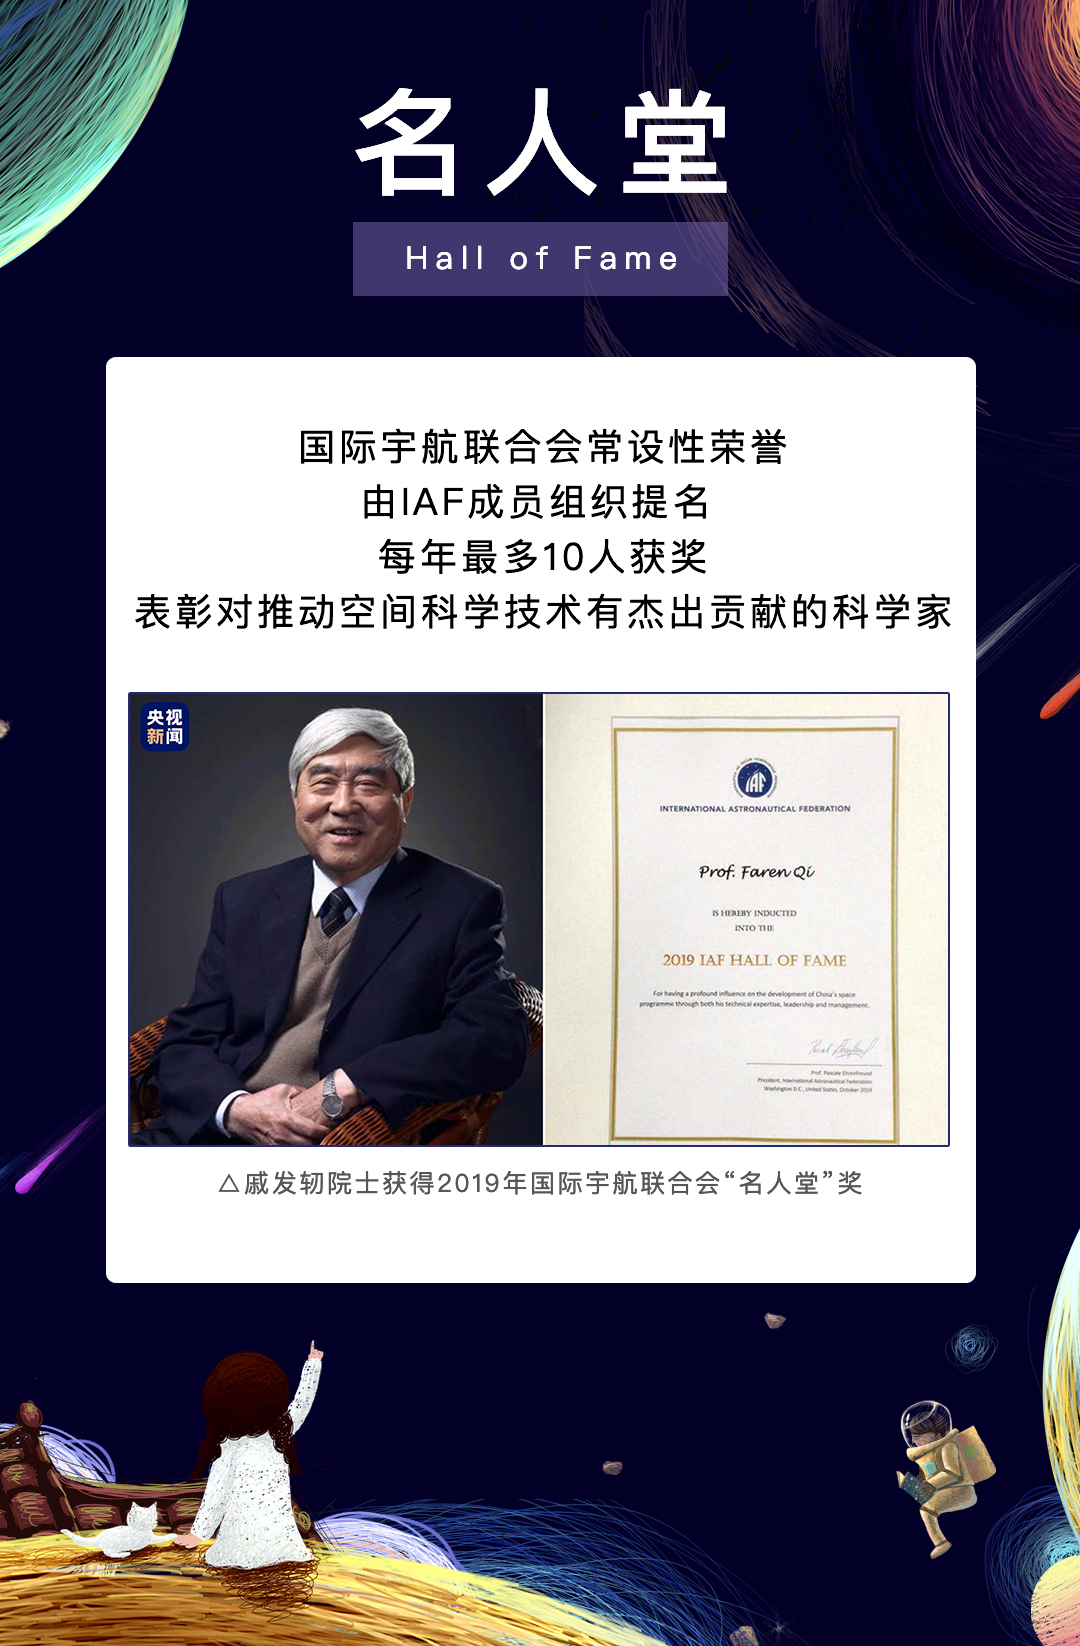 这个中国代表“缺席”的大会，却把大奖颁给了中国的科学家……